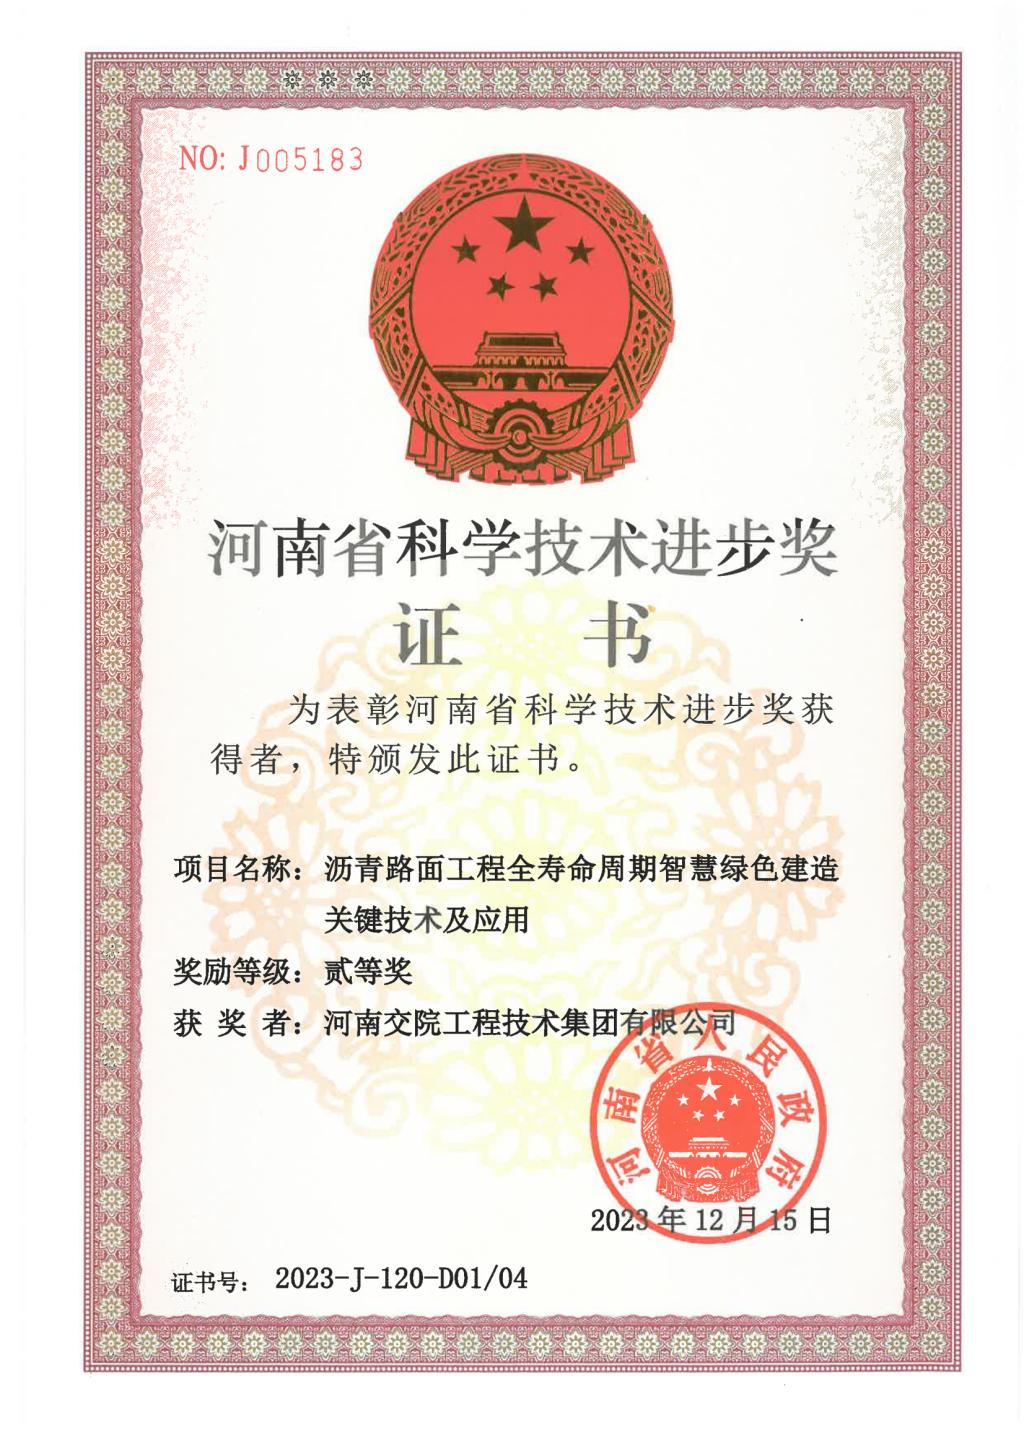 交院技术集团连续三年荣获“河南省科学技术进步奖”